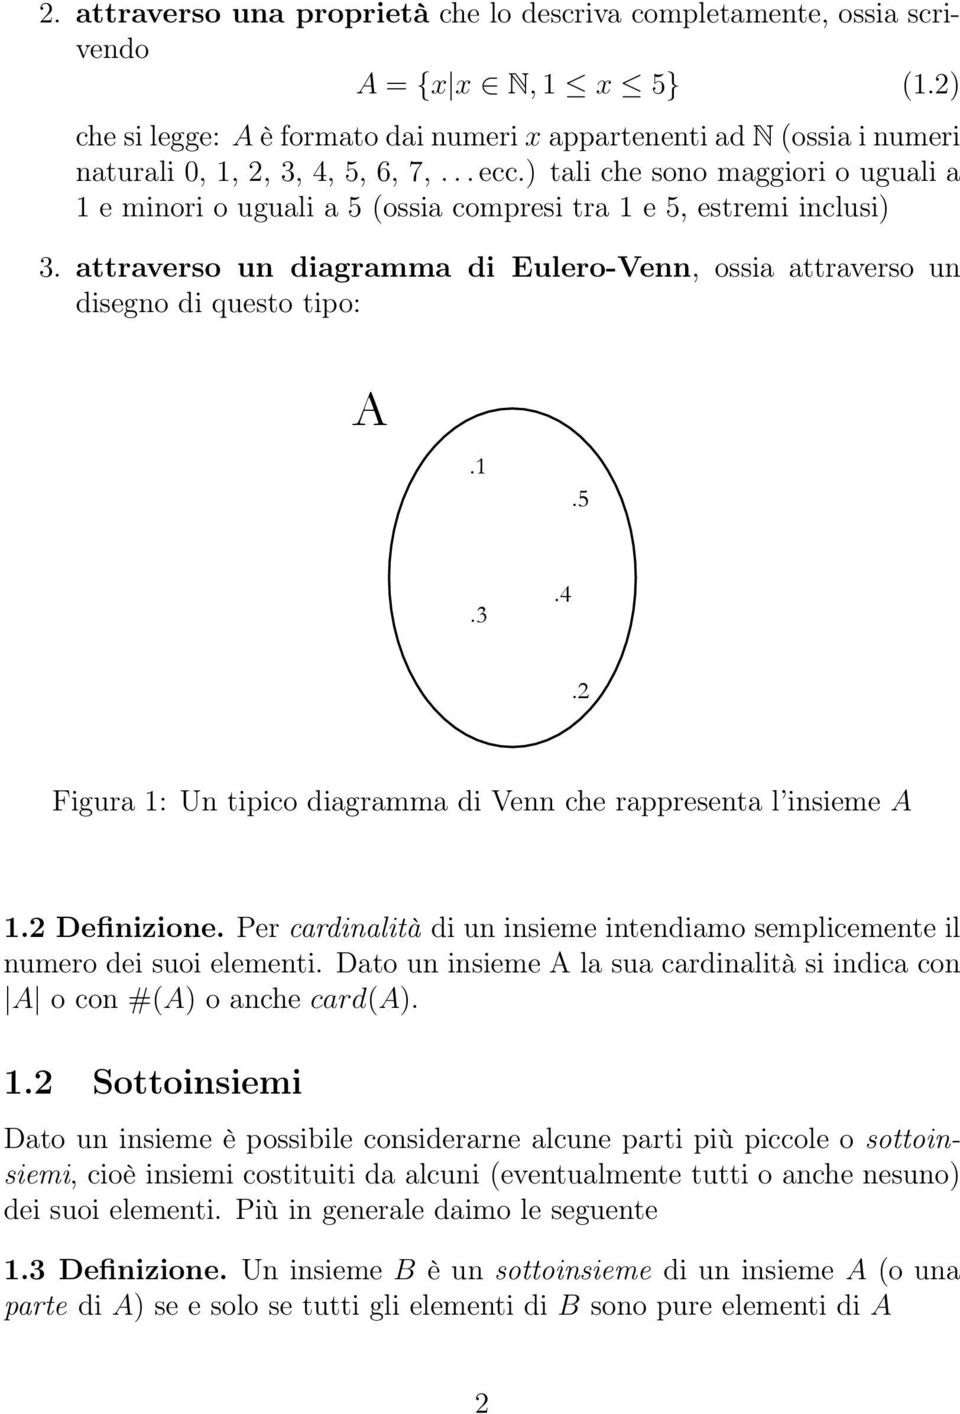 ) tali che sono maggiori o uguali a 1 e minori o uguali a 5 (ossia compresi tra 1 e 5, estremi inclusi) 3. attraverso un diagramma di Eulero-Venn, ossia attraverso un disegno di questo tipo: A.1.5.3.4.